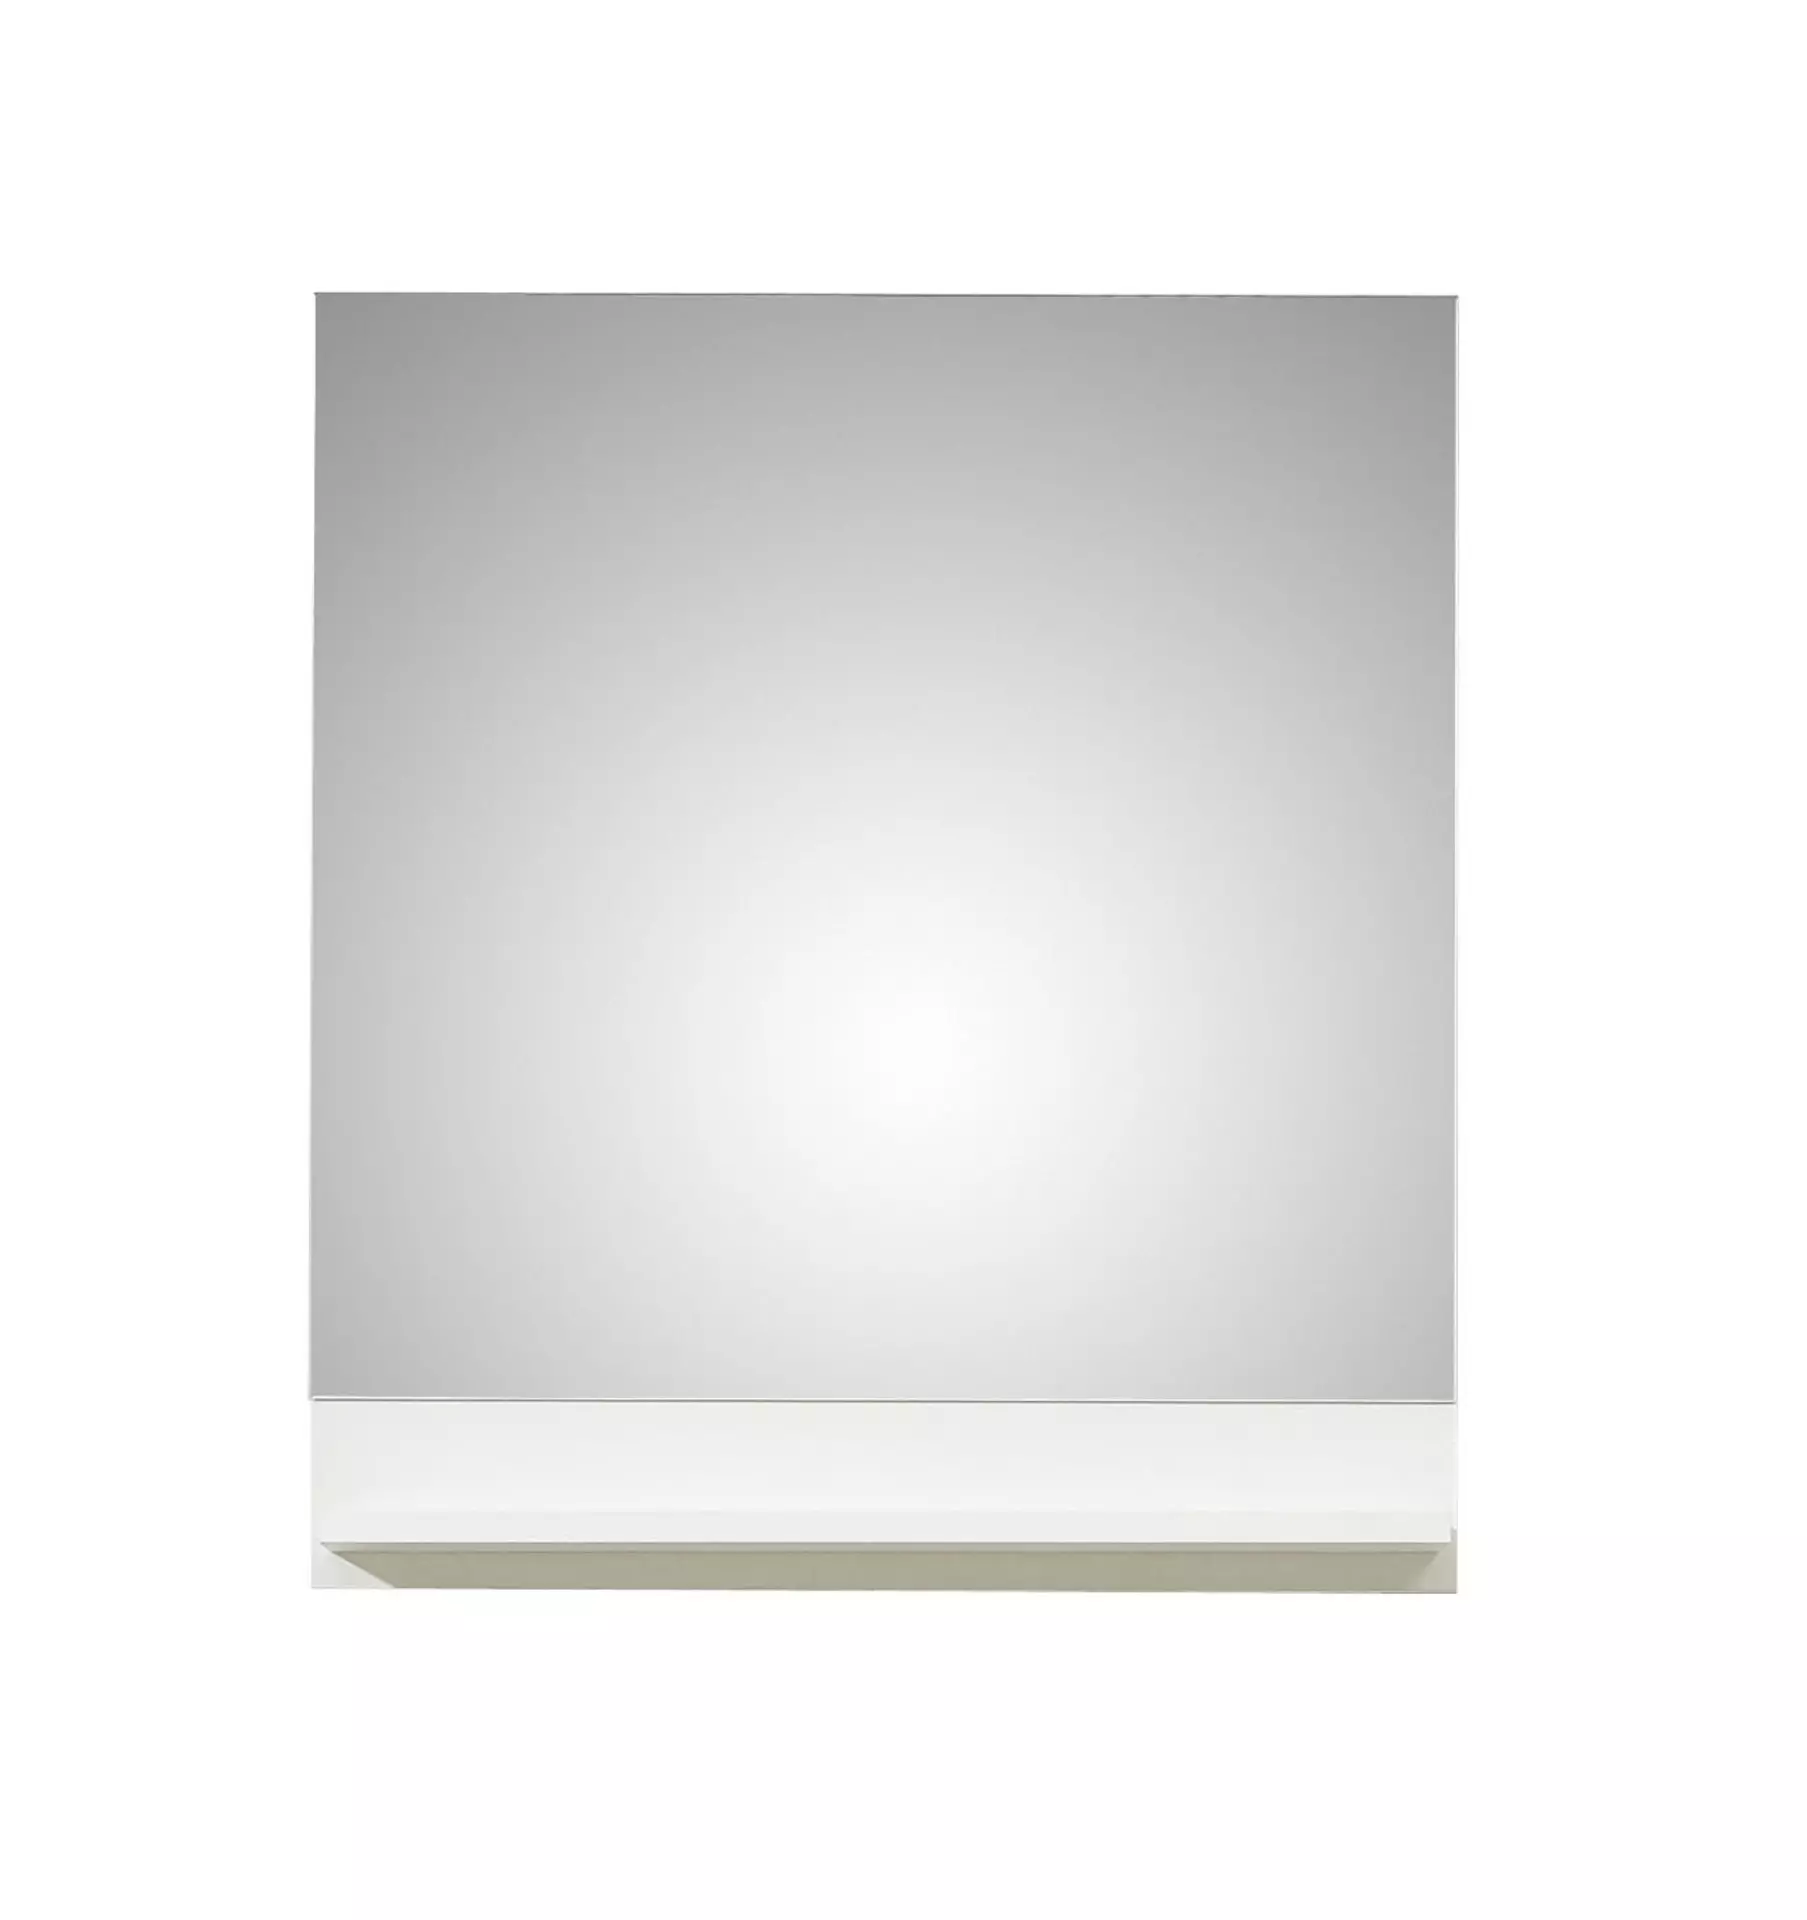 Spiegel ca. 60 x 68 x 13 cm weiß | Möbel Inhofer